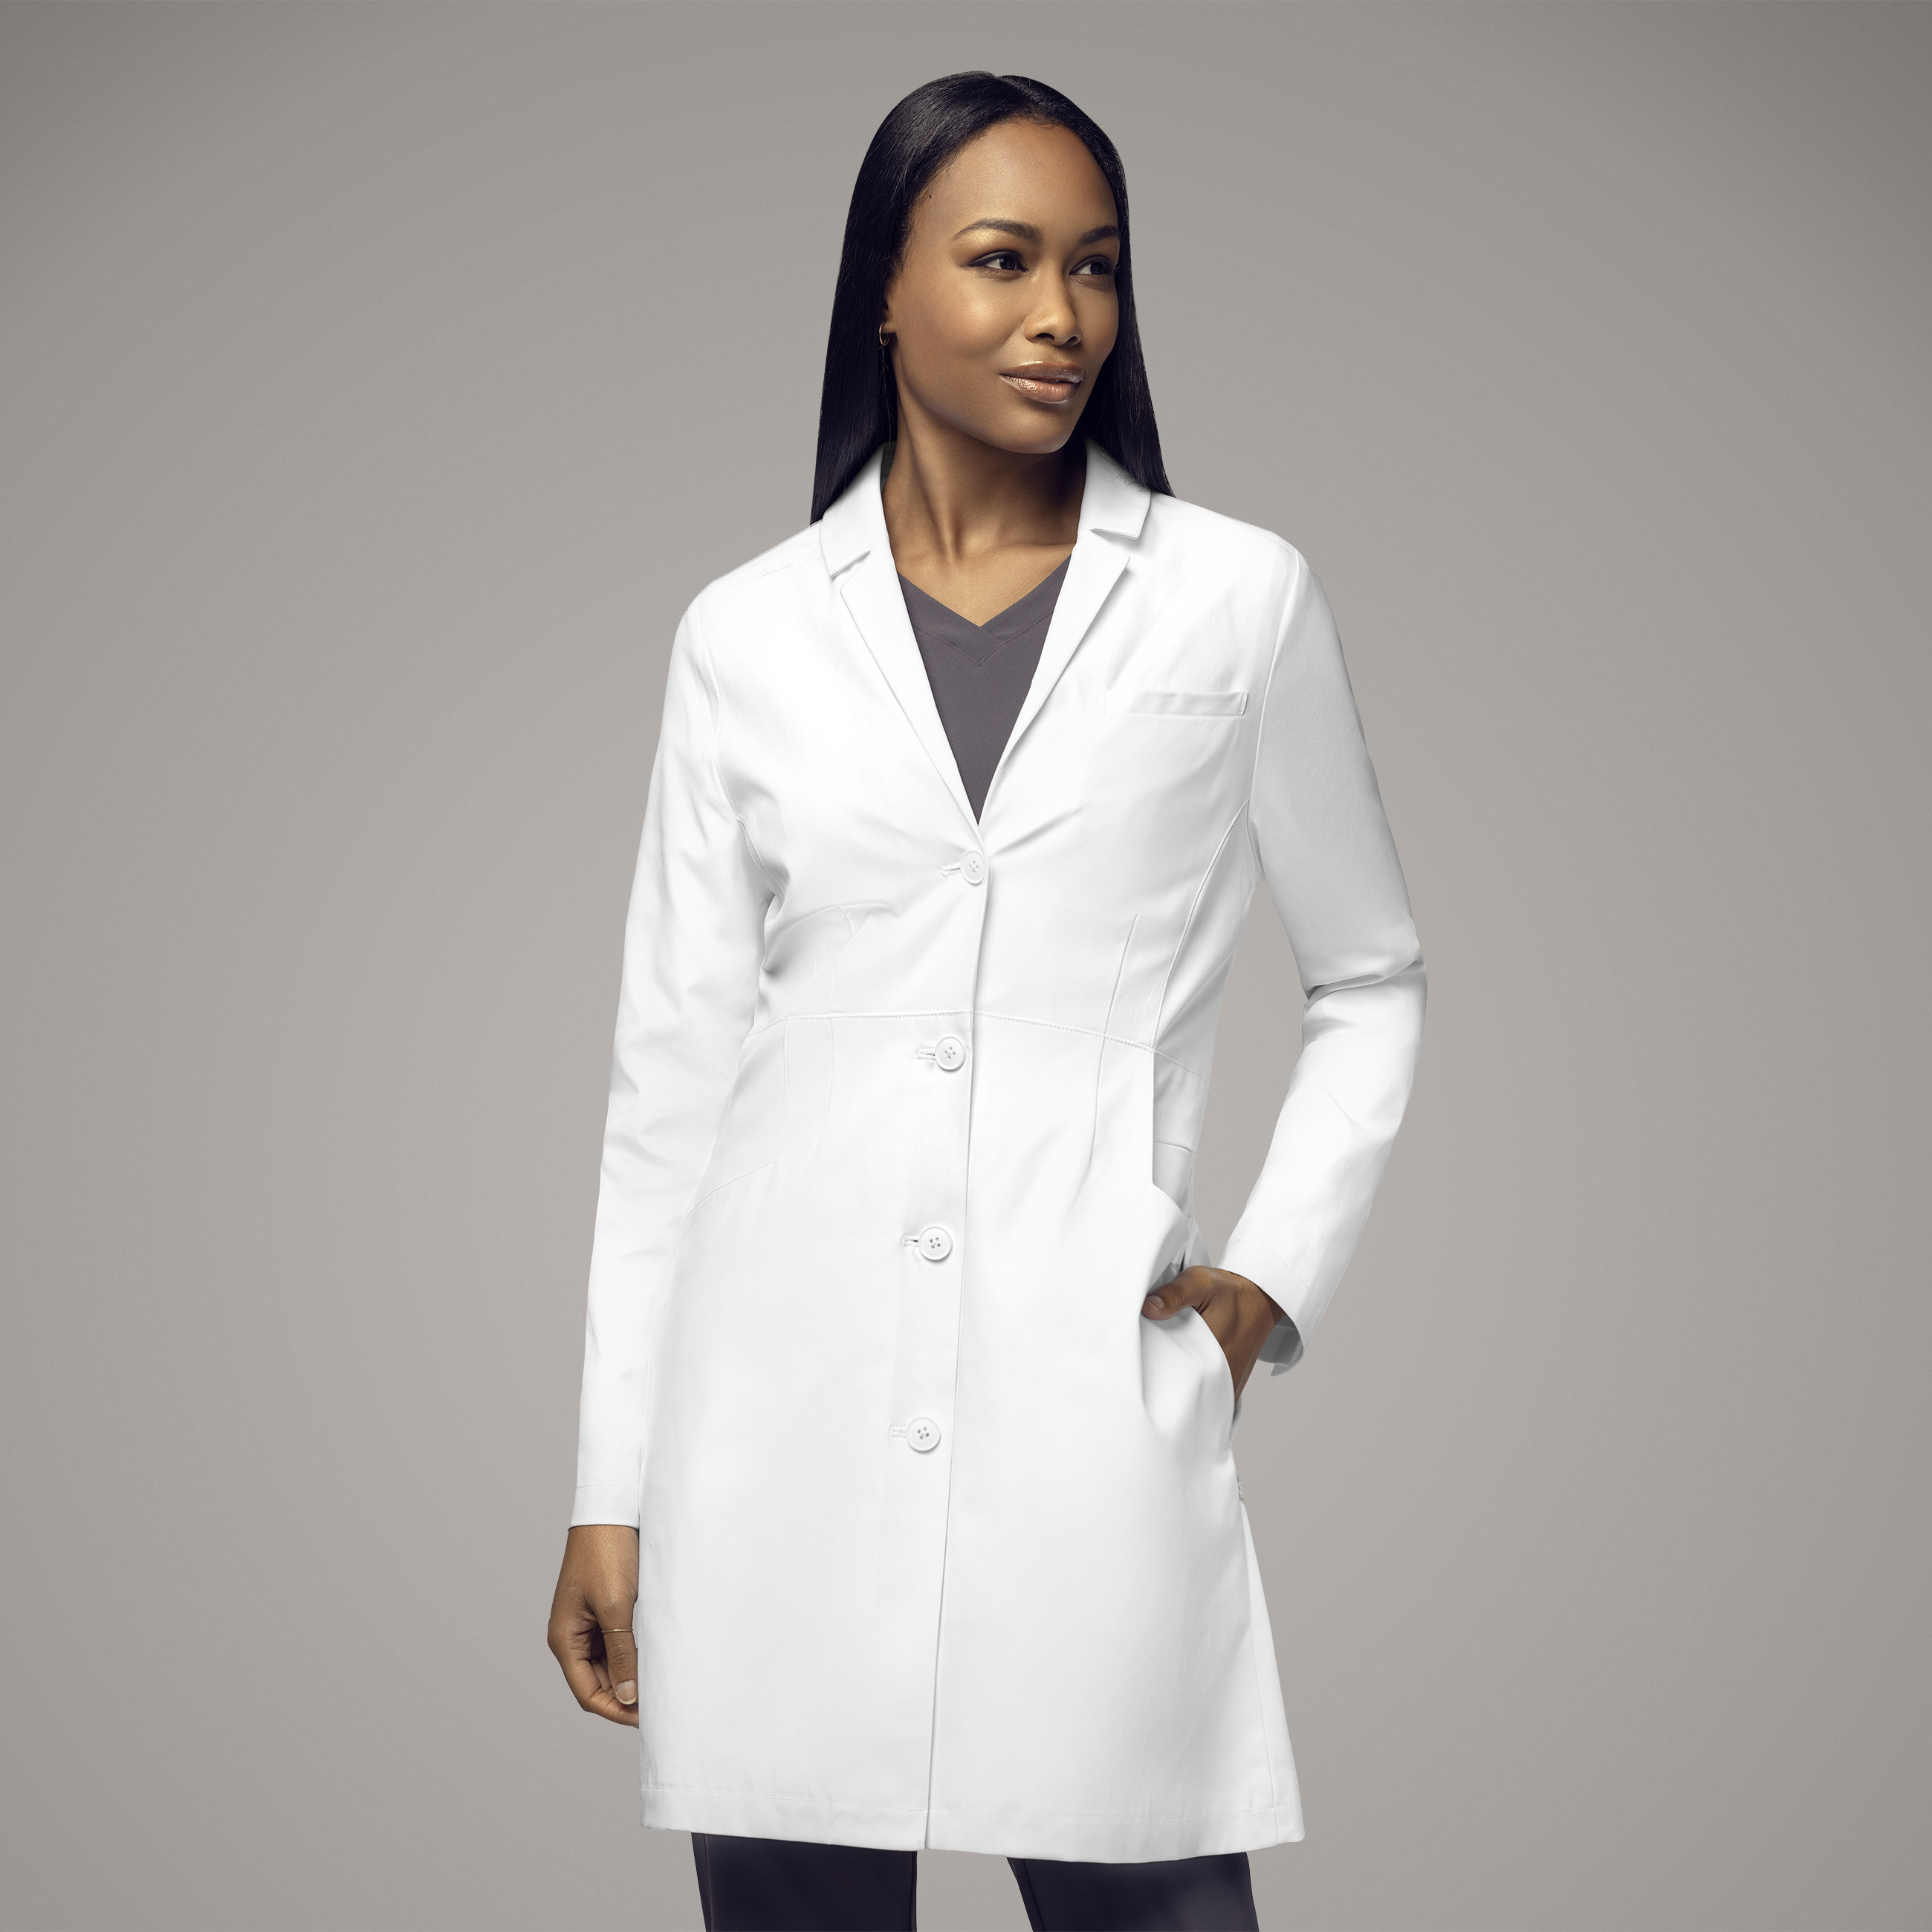 Wink Slate Women&#8216;s 35 Inch Doctors Coat-WonderWink